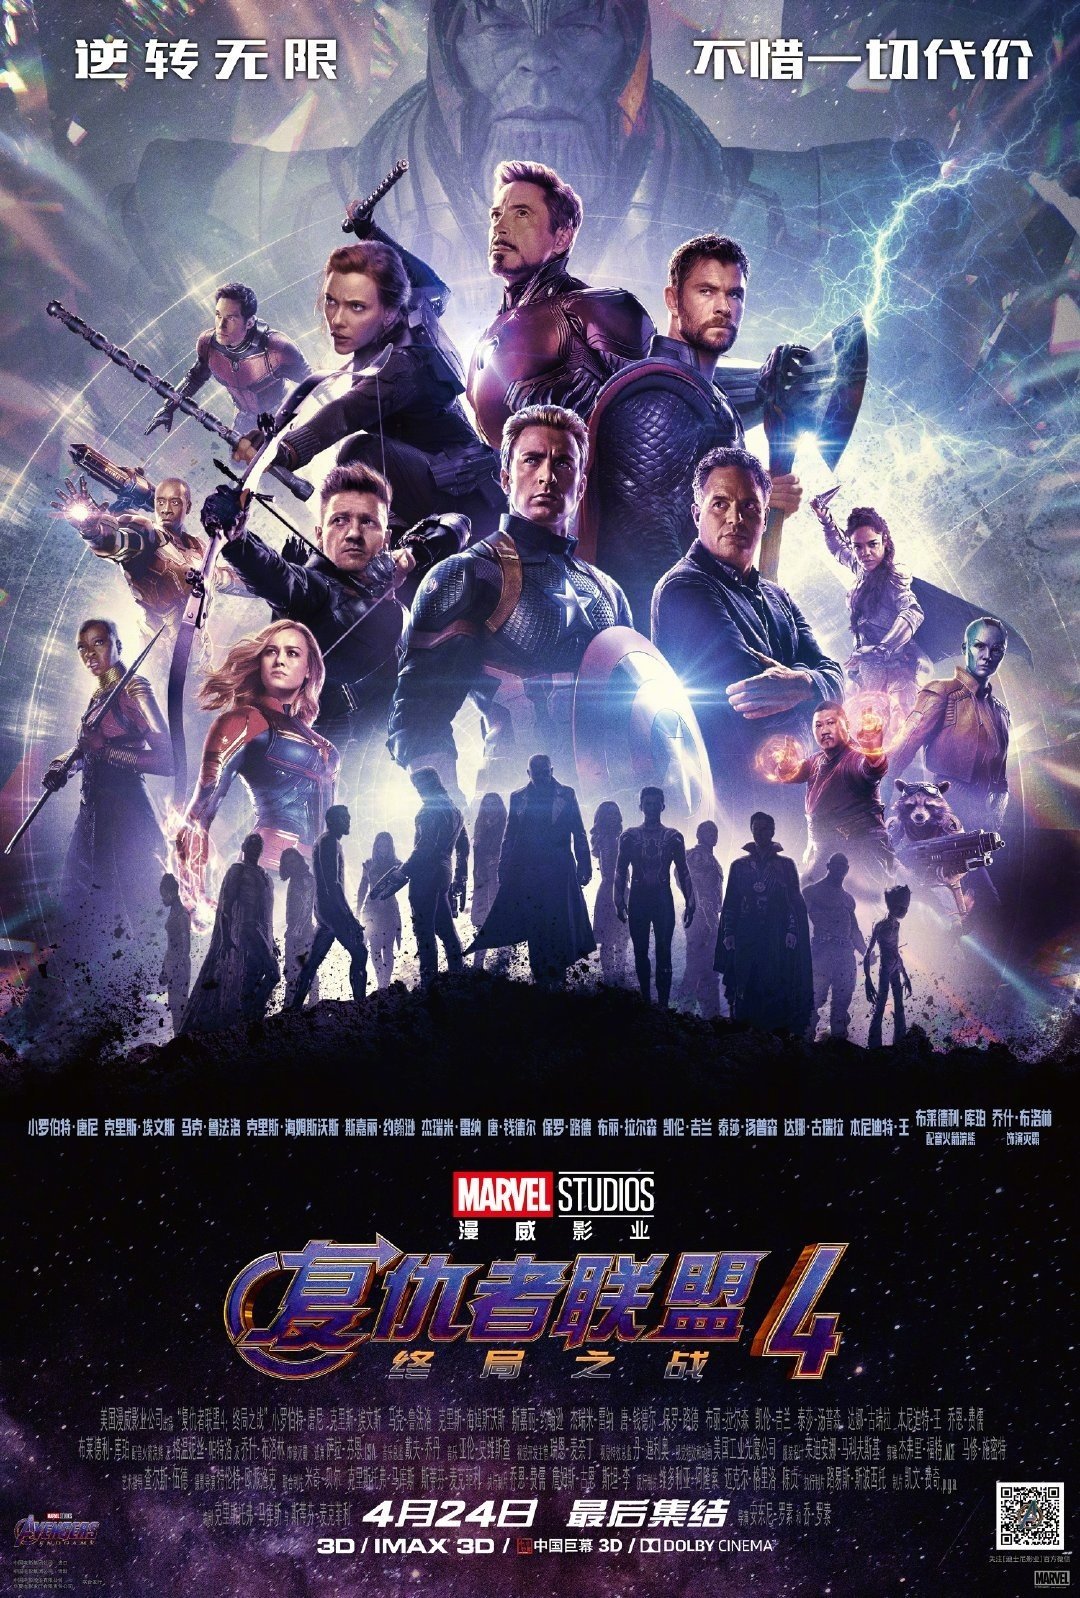 ‘Avengers: Endgame’ Poster Brings Back Fallen MCU Heroes!!